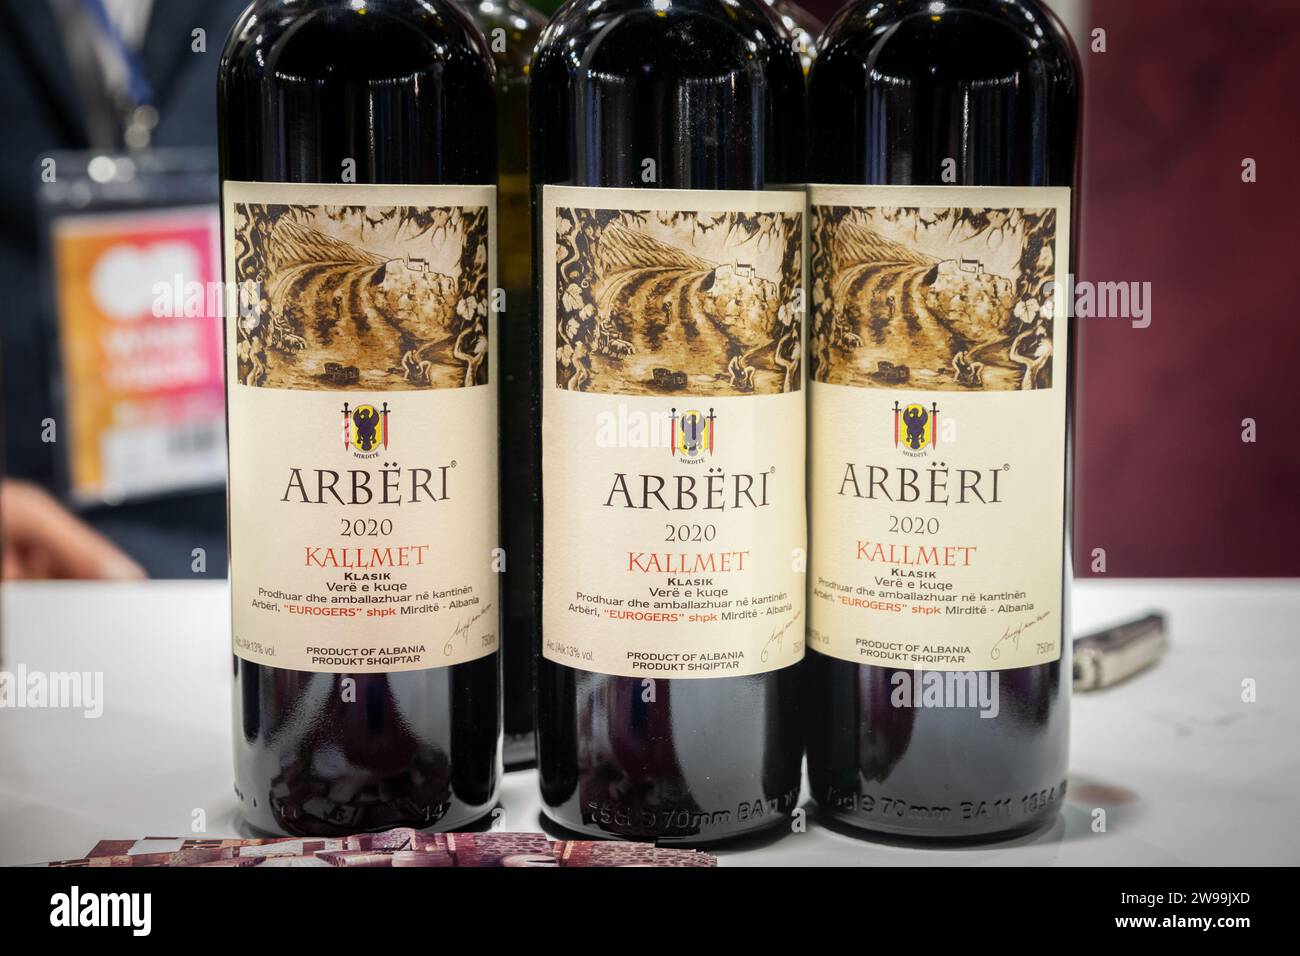 Bild von Flaschen Rotwein aus albanien zum Verkauf in Belgrad. Albanischer Wein wird in verschiedenen Regionen Albaniens im Mittelmeerraum erzeugt Stockfoto